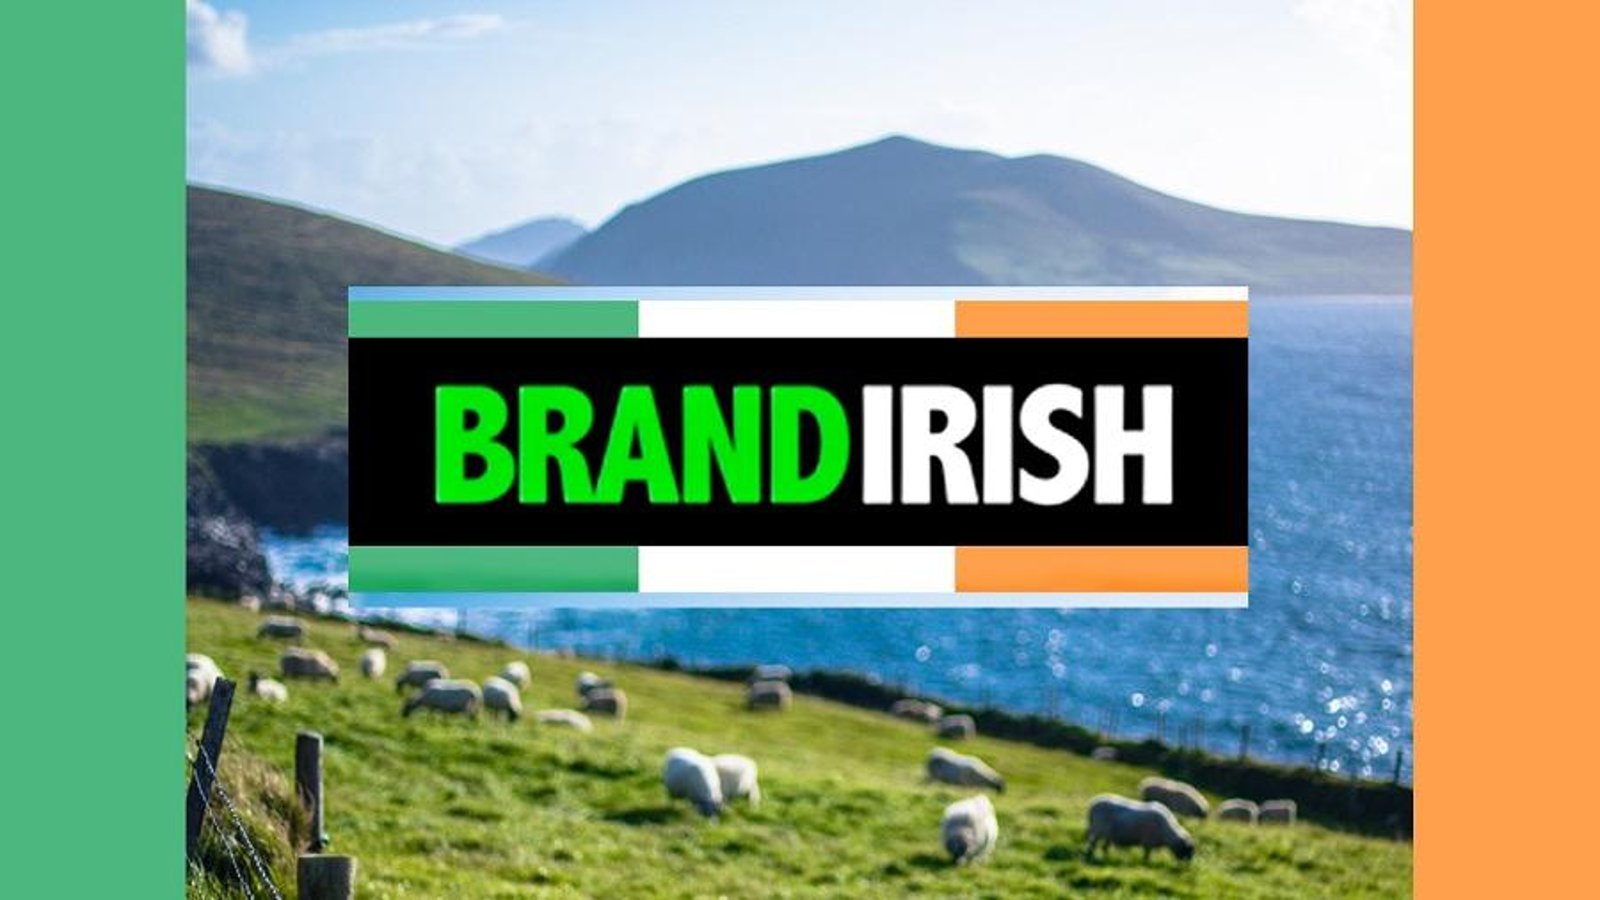 Brand Irish - The Global Marketing of Irish Traditions